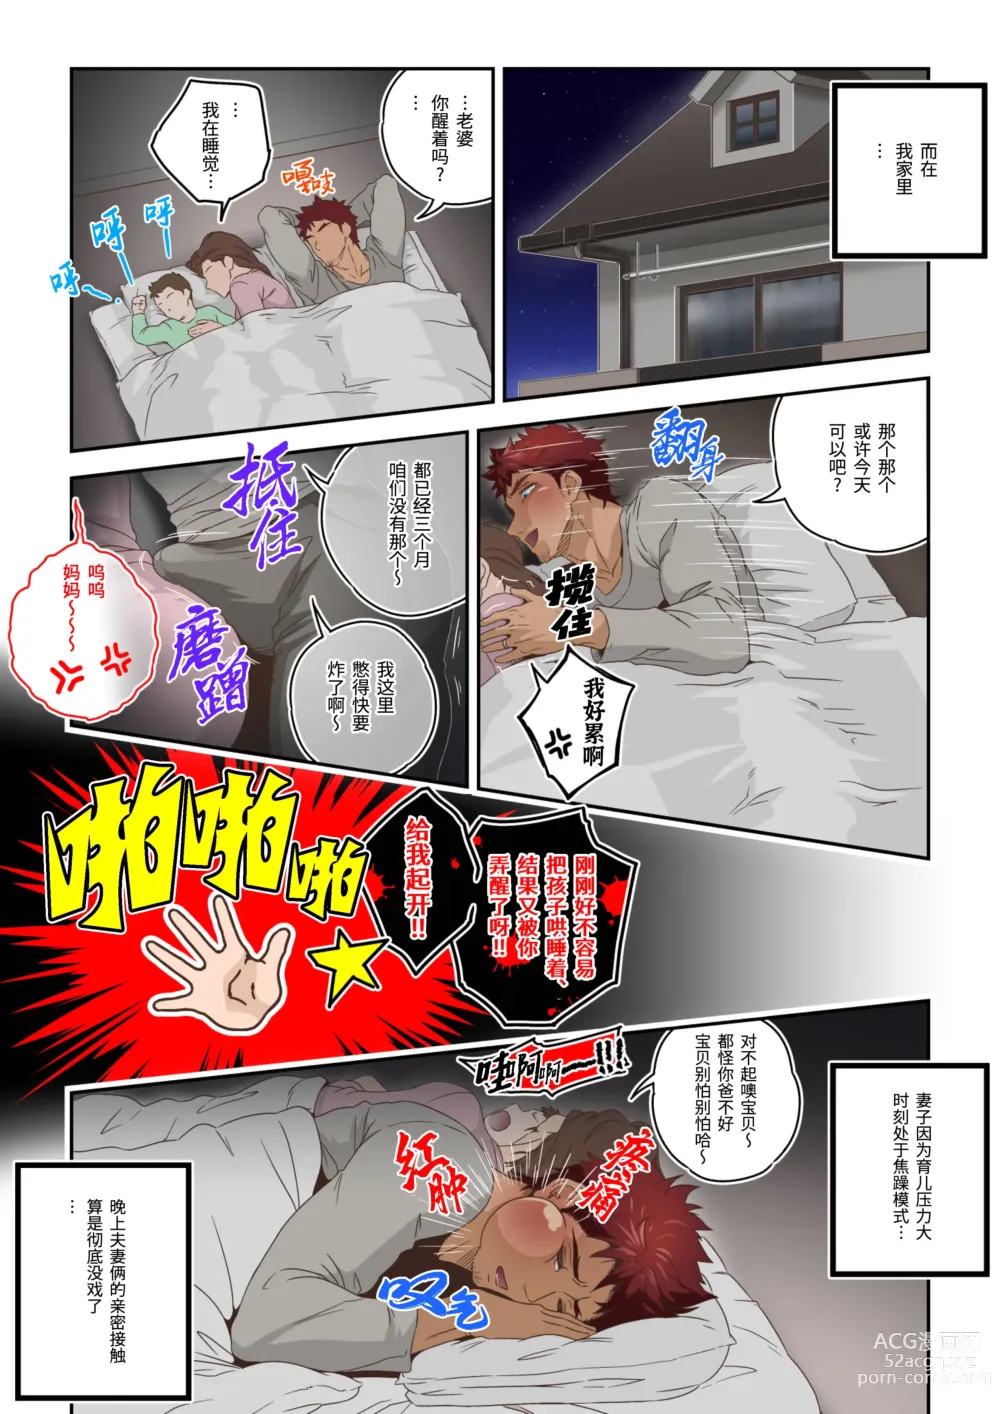 Page 4 of doujinshi 体育老师在试衣间里被虐奸 (decensored)